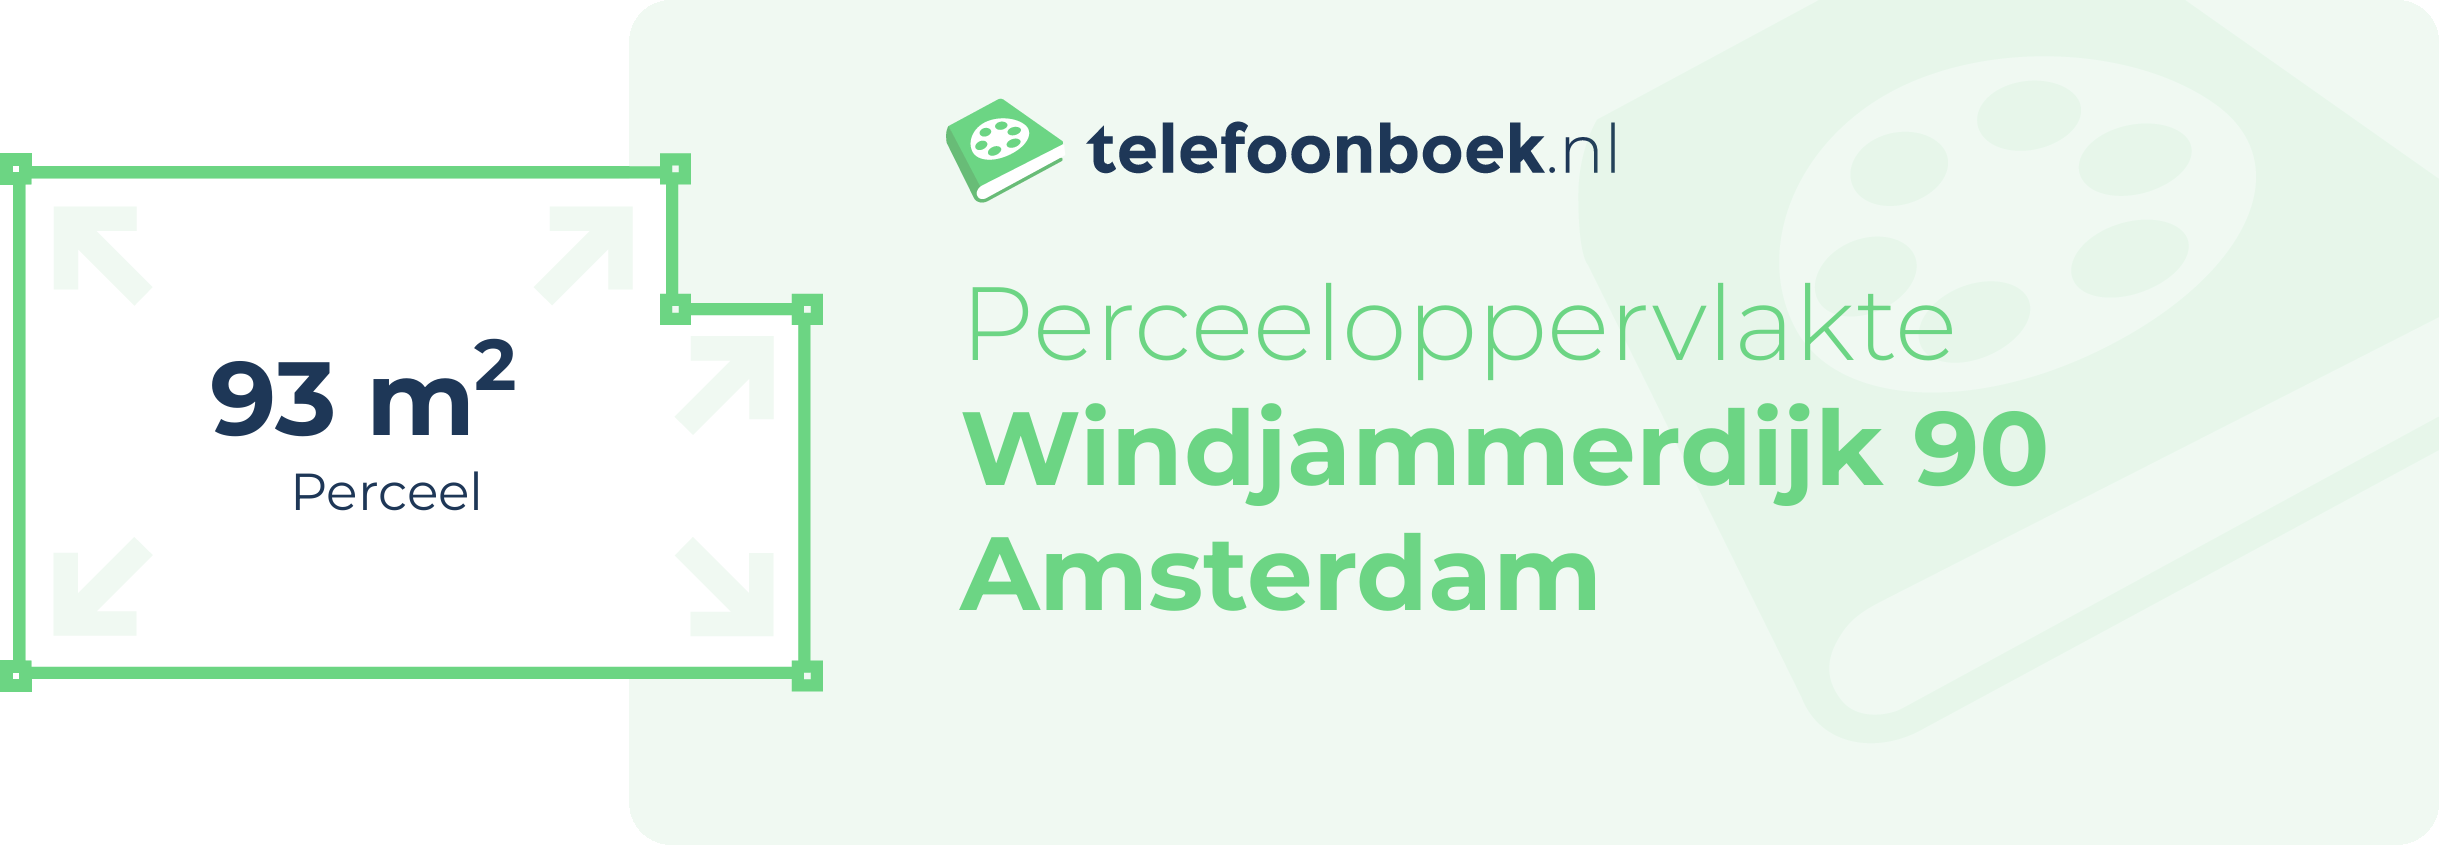 Perceeloppervlakte Windjammerdijk 90 Amsterdam